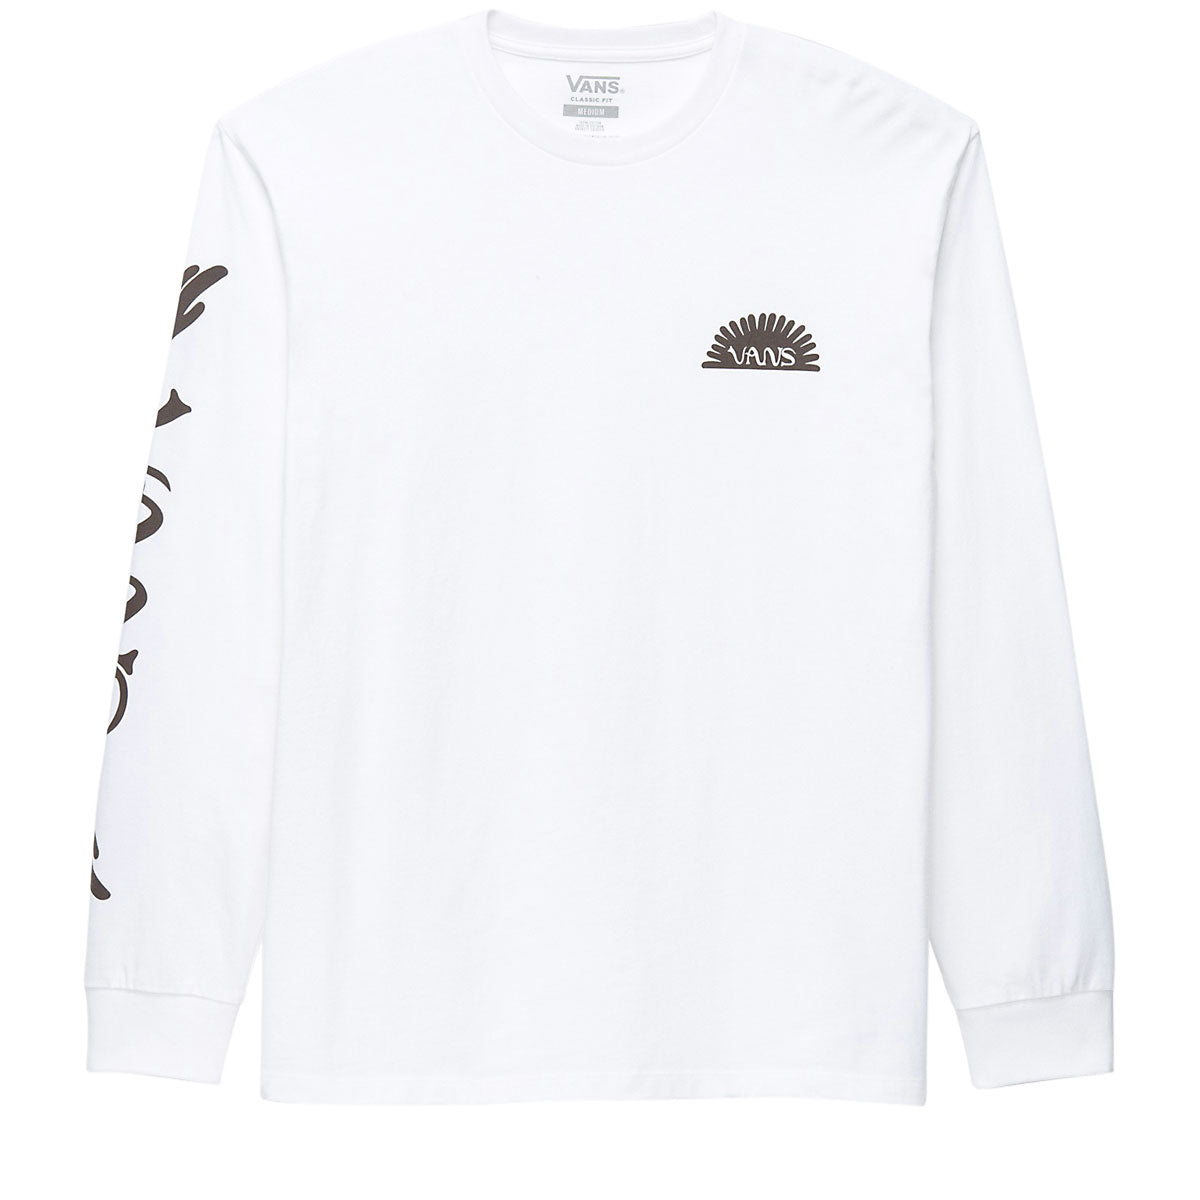 Vans Dakota Roche Long Sleeve T-Shirt - White image 1